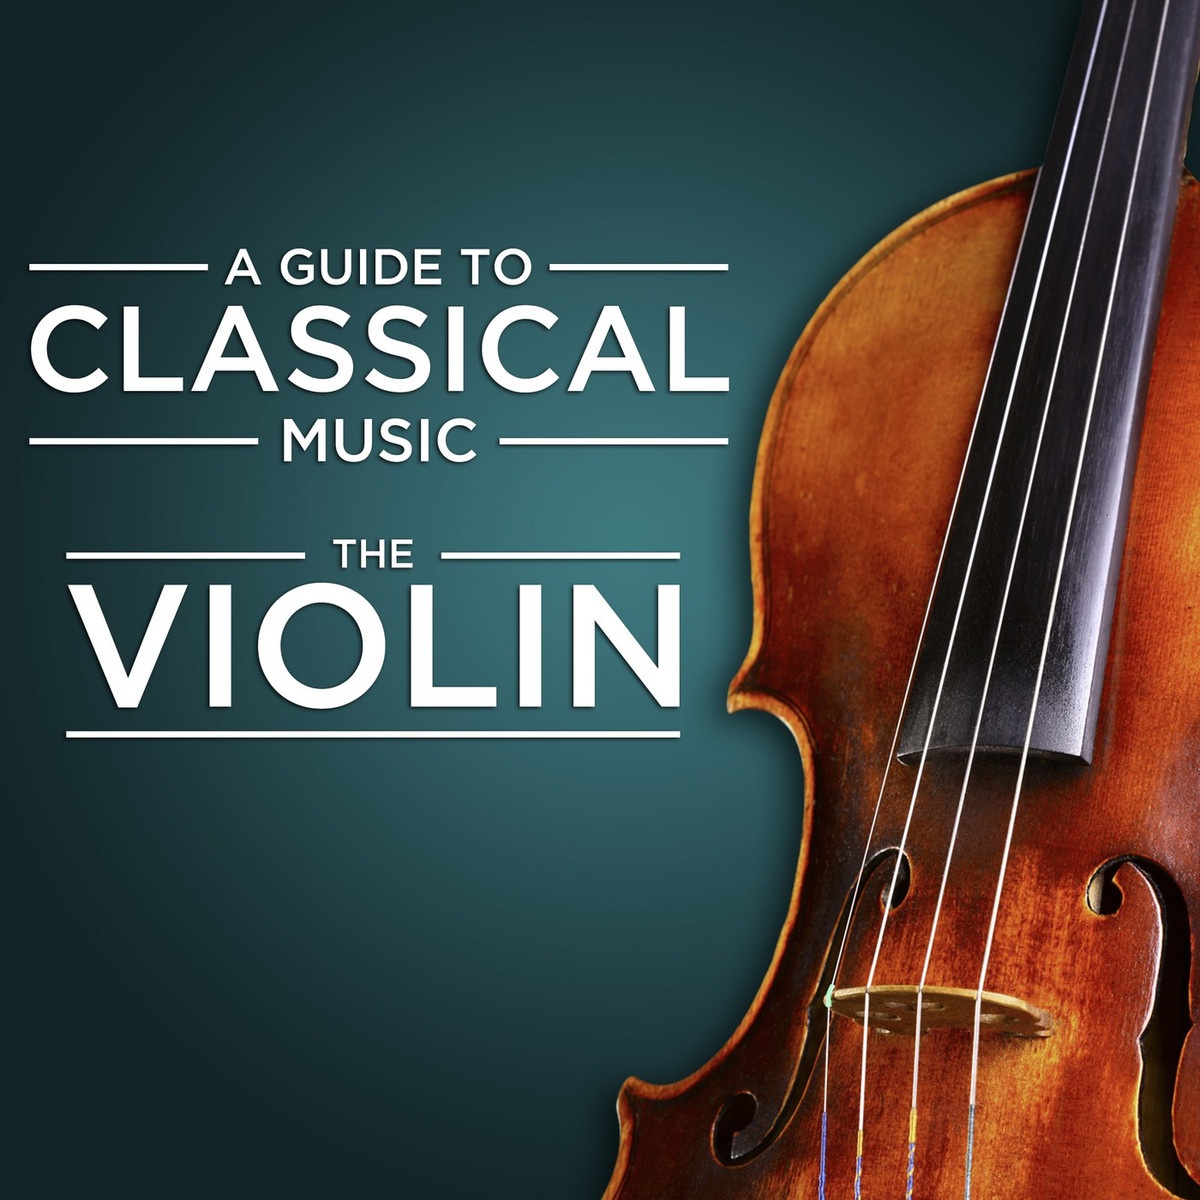 Sonata in A Major for Violin and Piano, M. 8: I. Allegro ben moderato